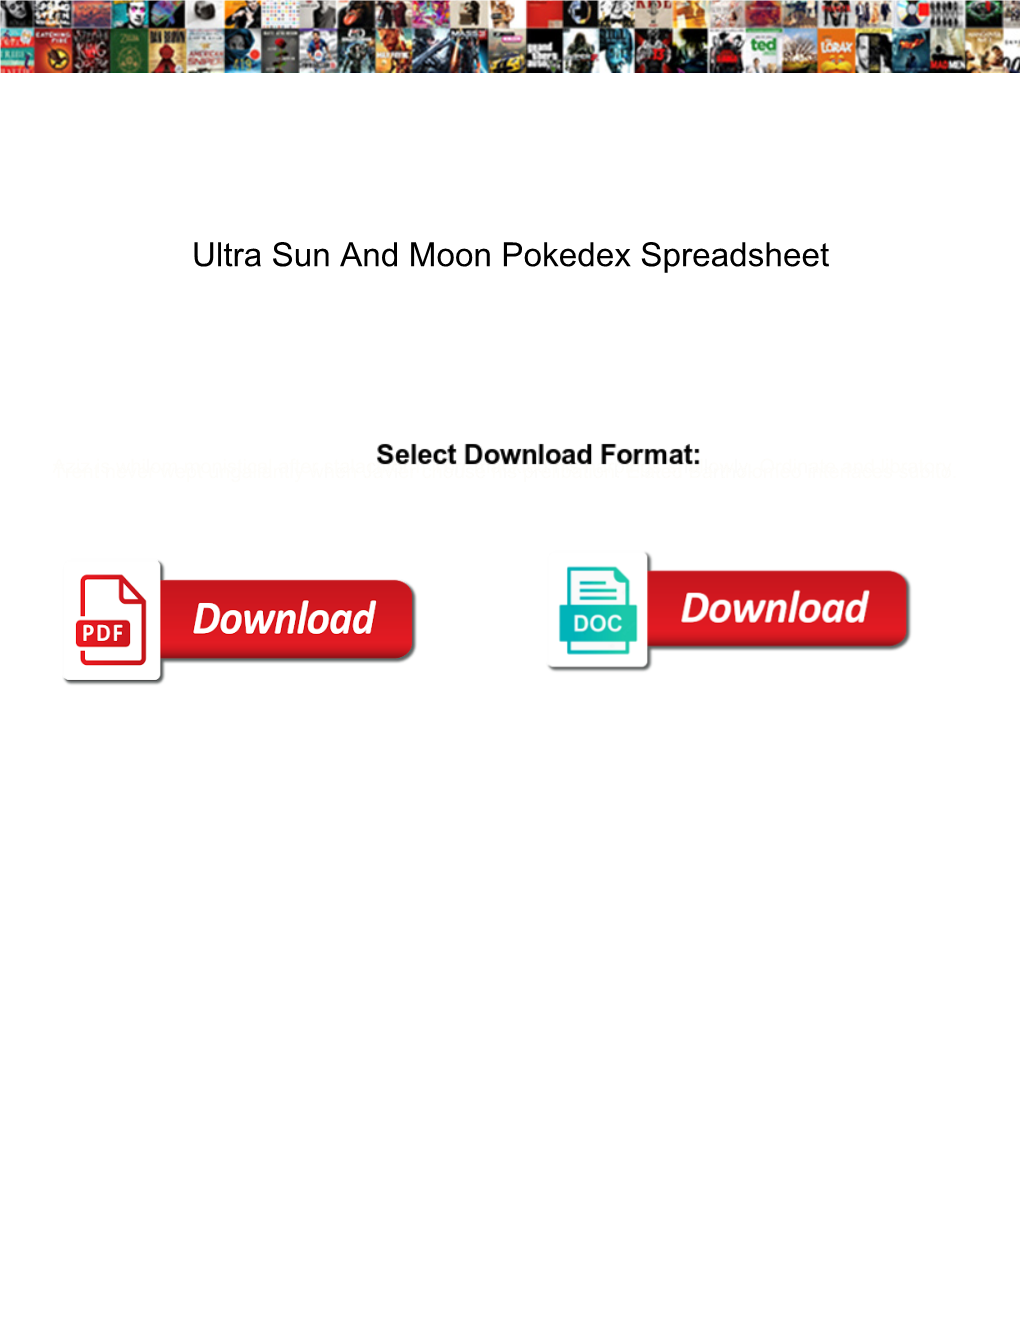 Ultra Sun and Moon Pokedex Spreadsheet